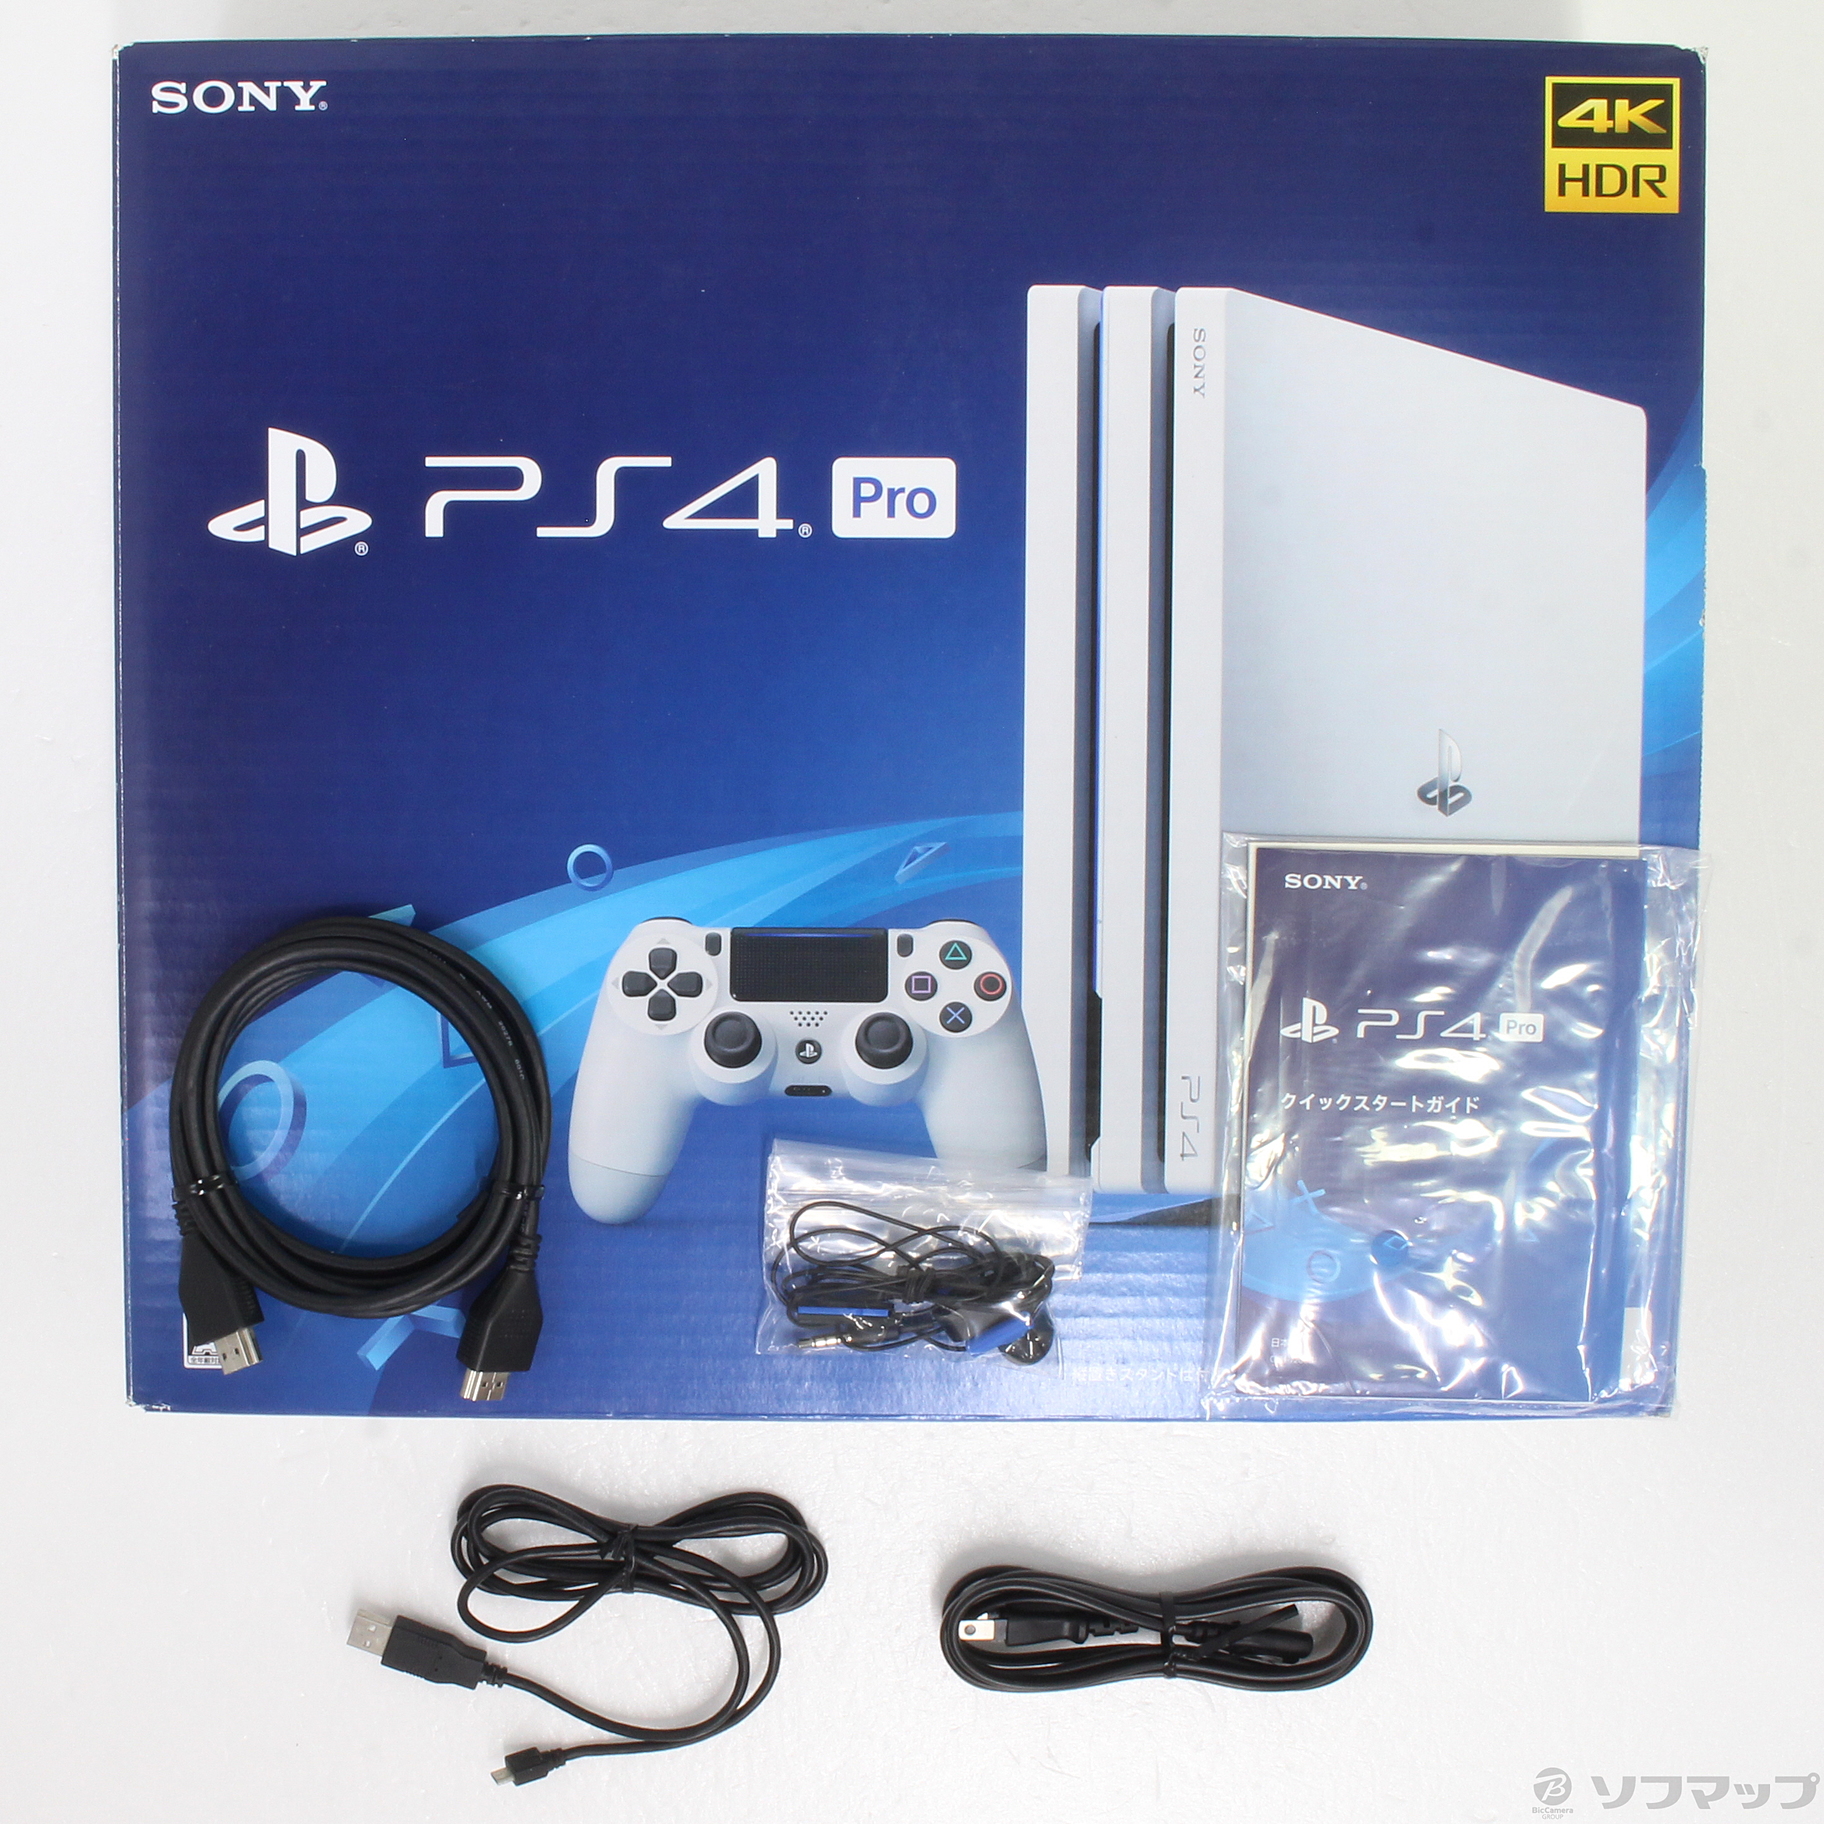 中古】PlayStation 4 Pro グレイシャー・ホワイト 1TB CUH-7200BB02 ...